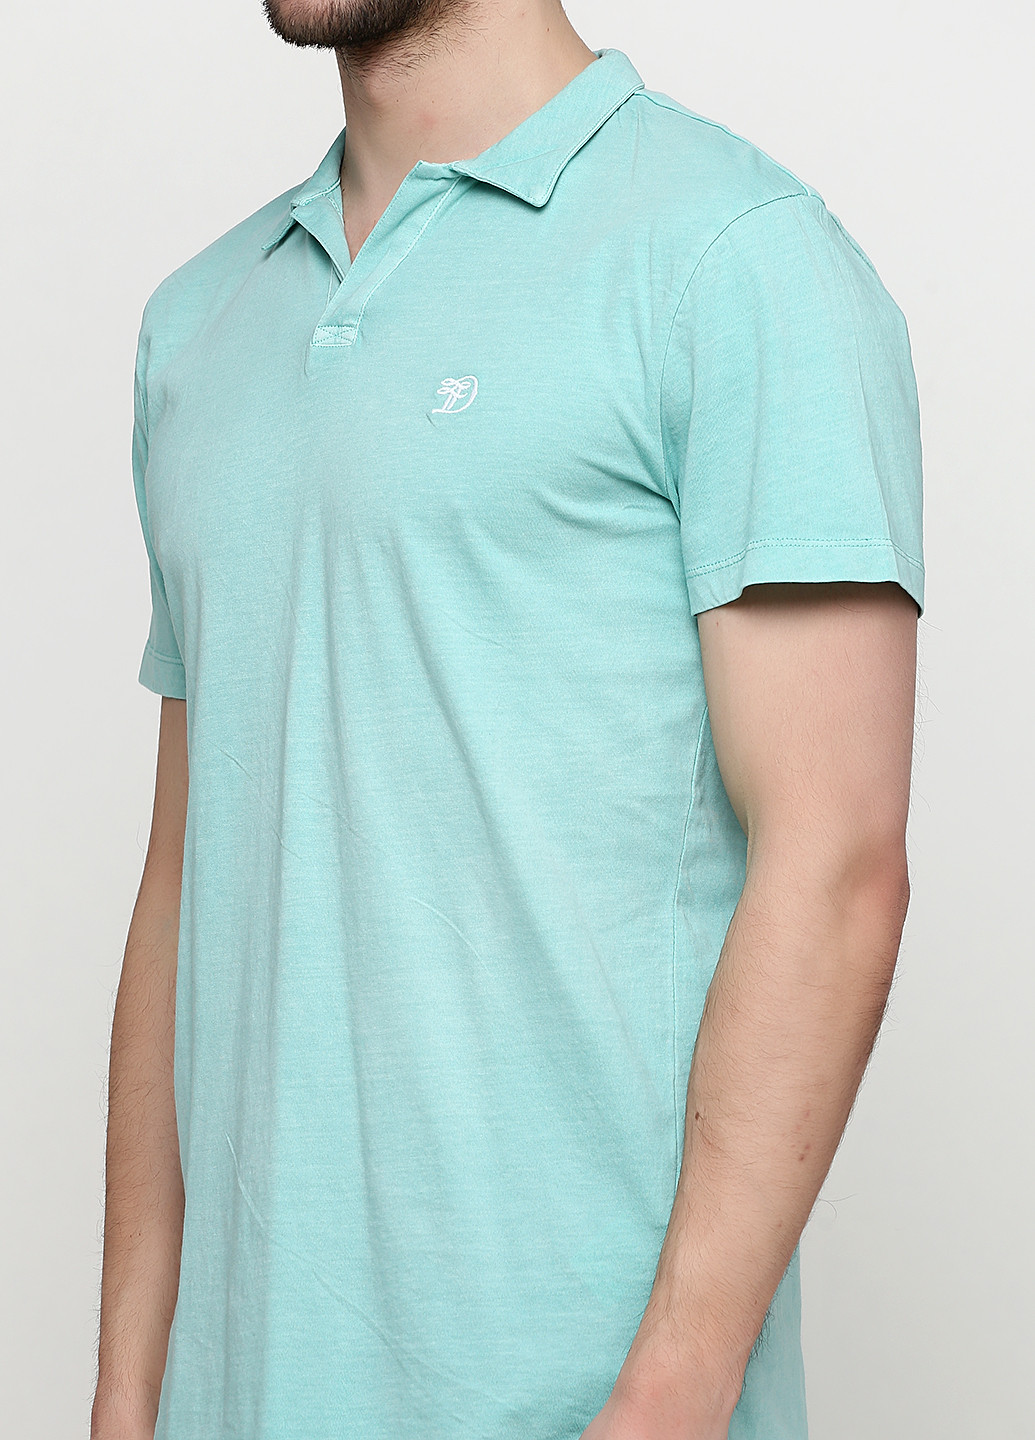 Светло-бирюзовая футболка-поло для мужчин Tom Tailor однотонная